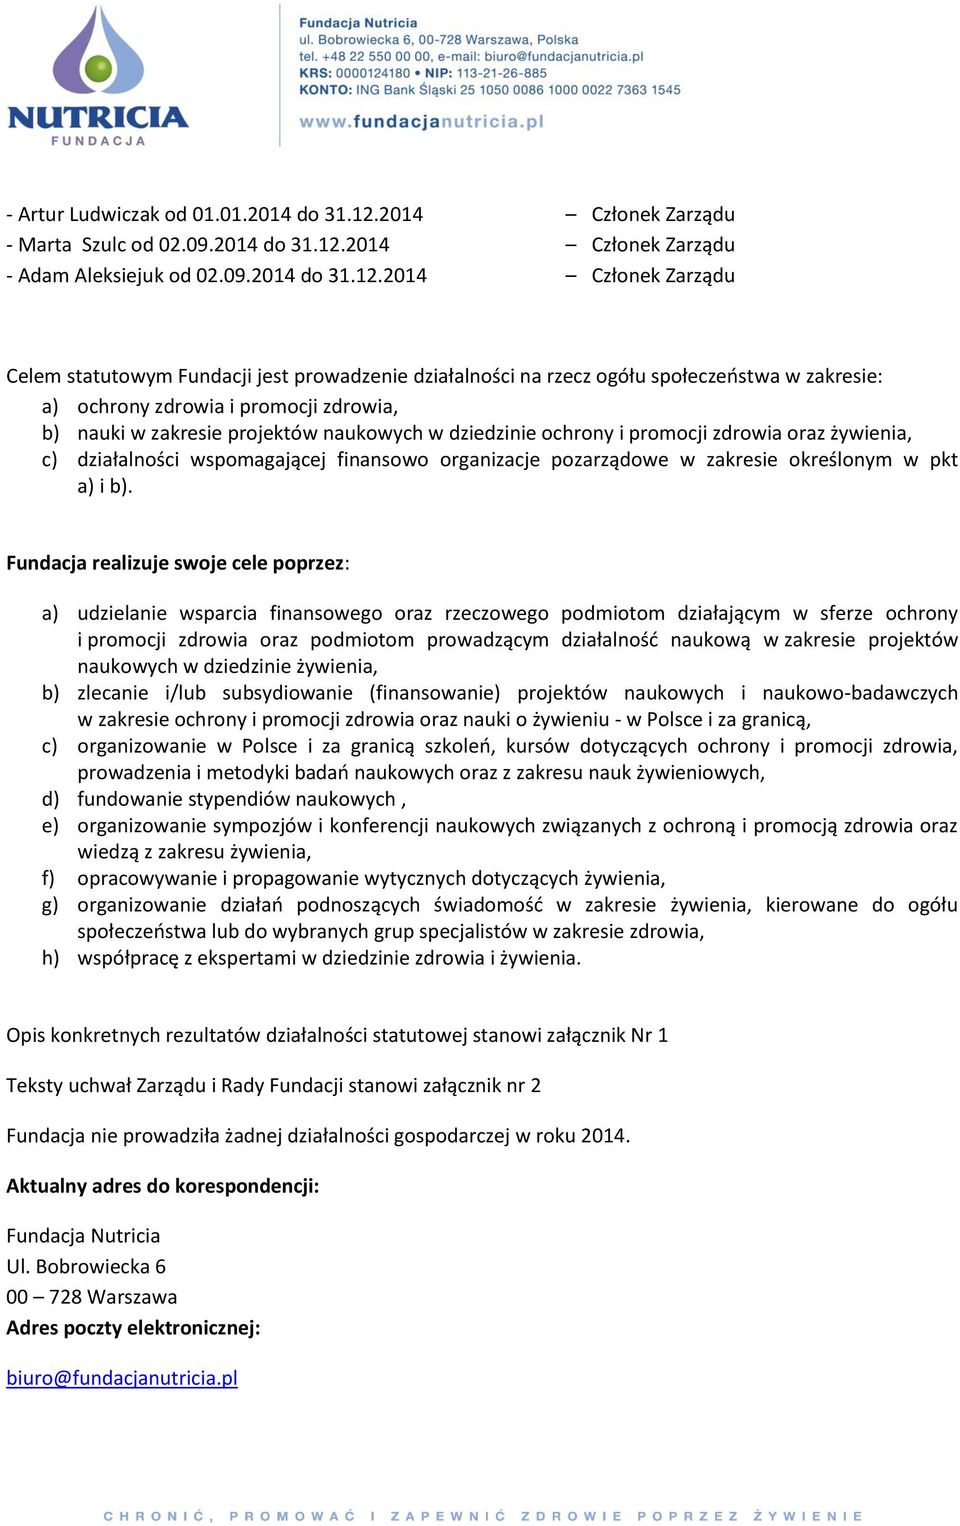 2014 Członek Zarządu - Adam Aleksiejuk od 02.09.2014 do 31.12.